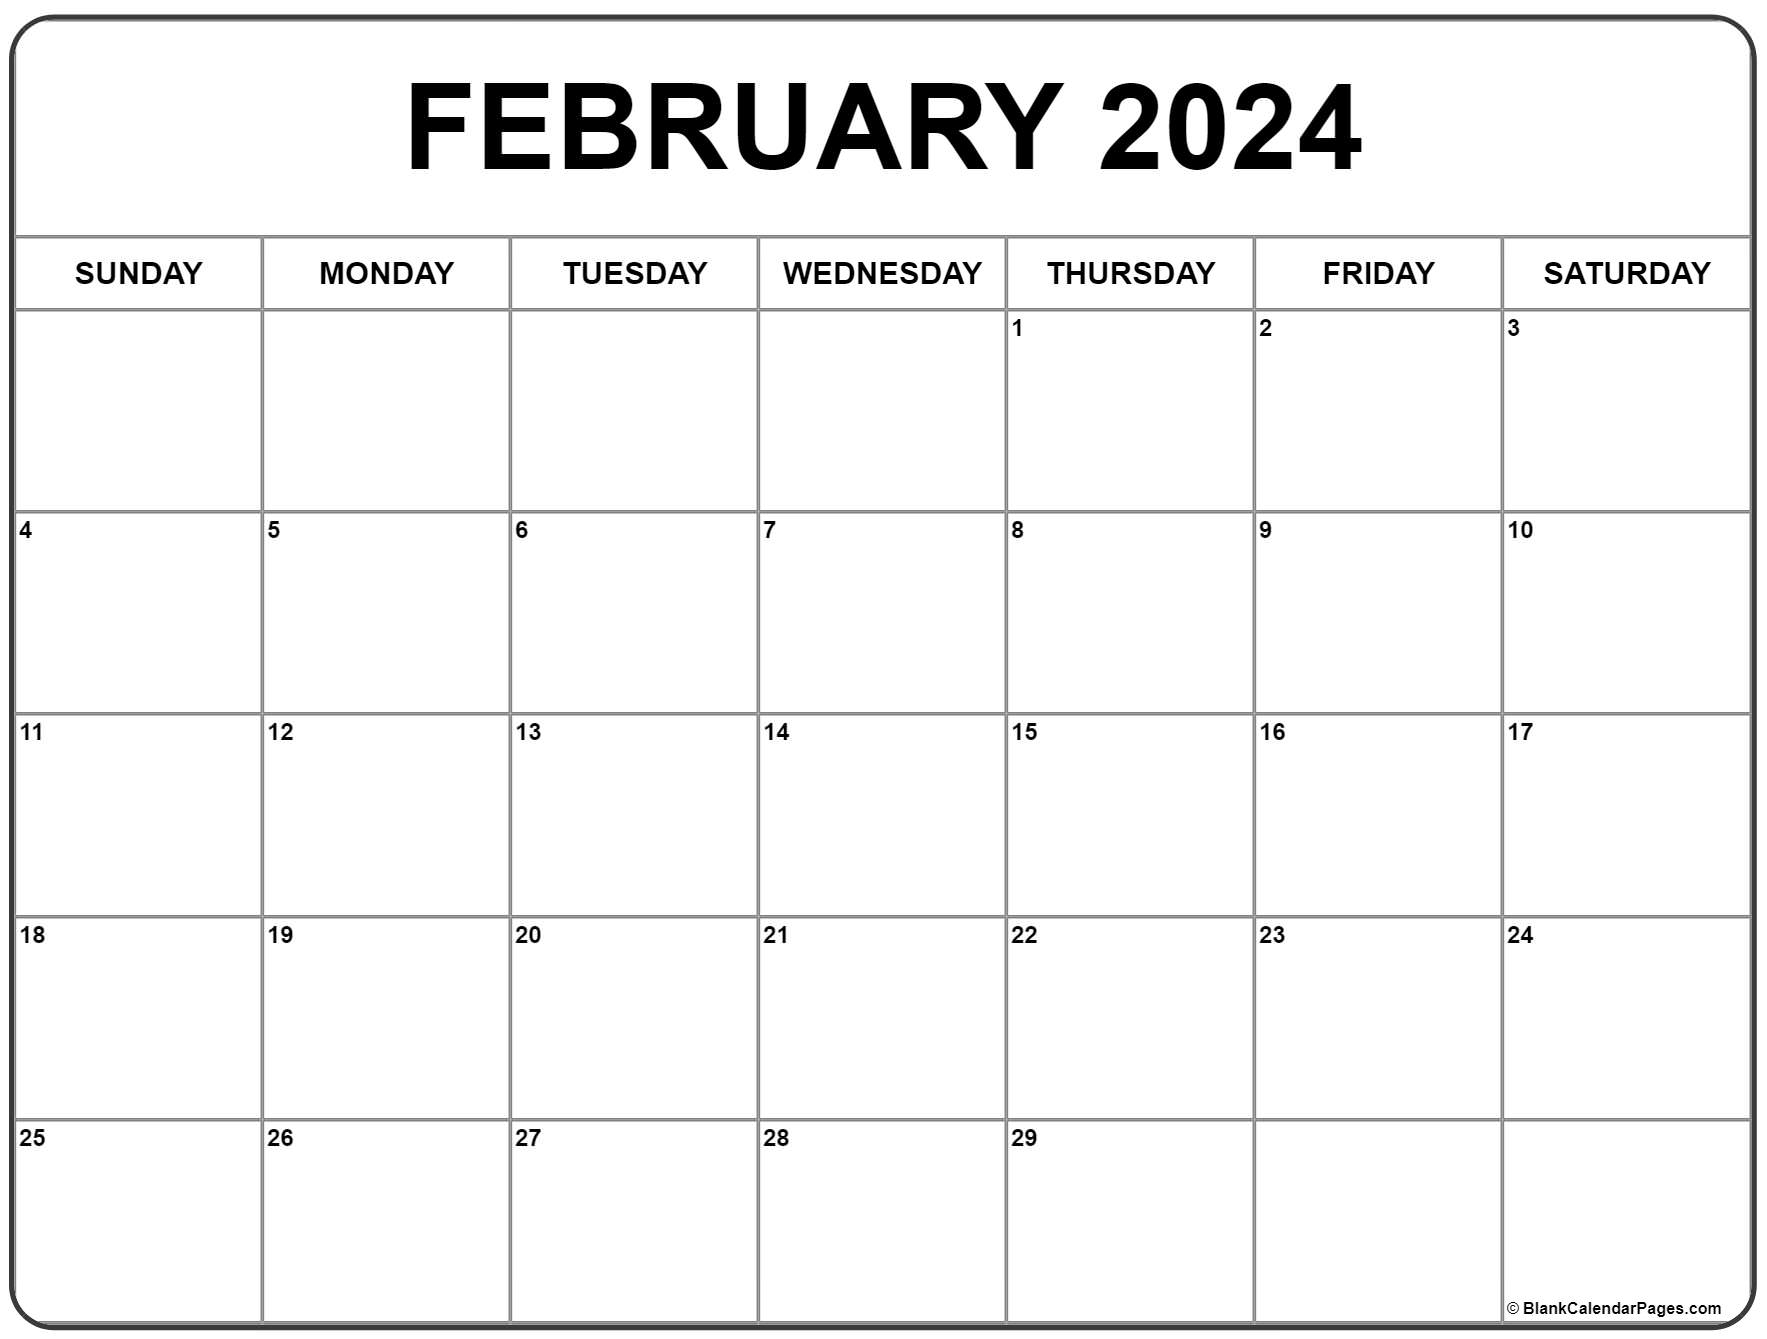 February 2024 Calendar | Free Printable Calendar for February 2024 Printable Calendar Free